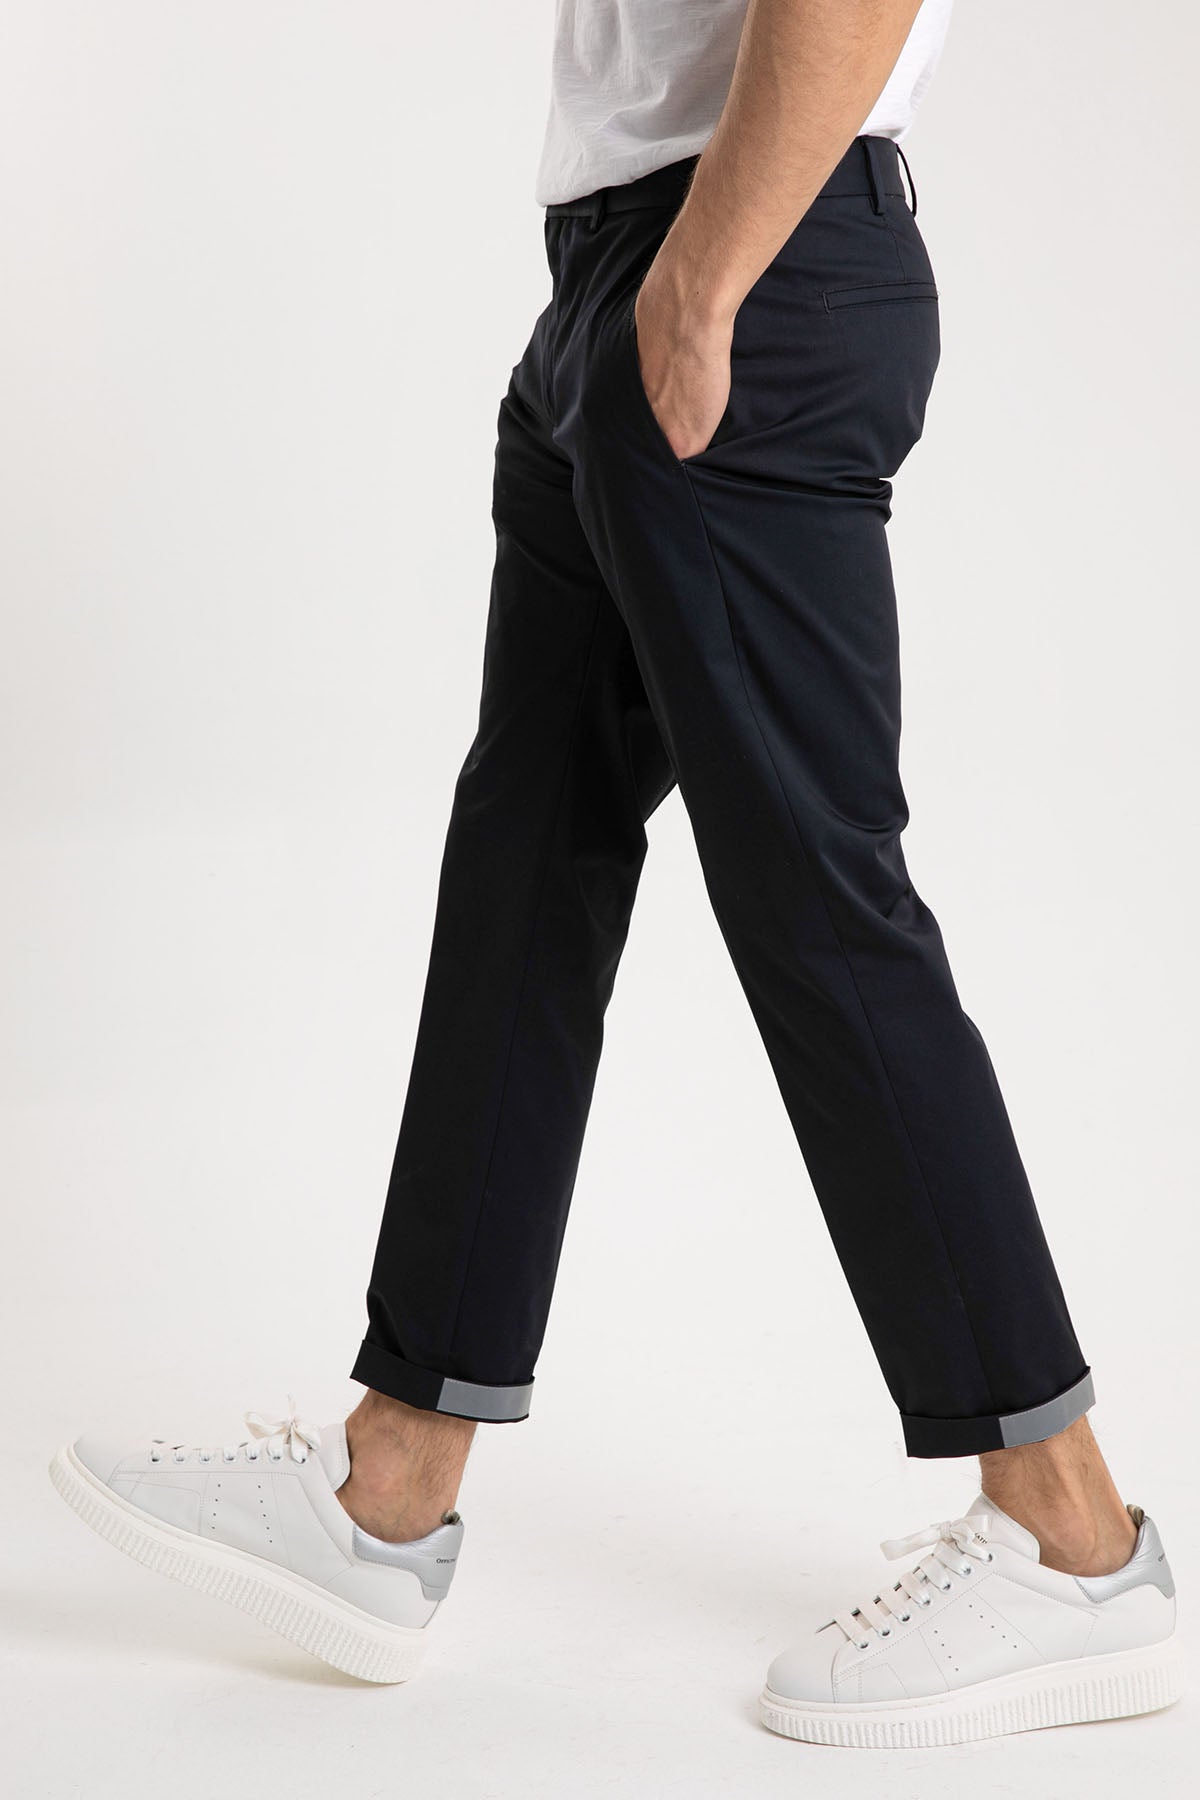 Pantaloni Torino Epsilon Stretch Yandan Cepli Pantolon-Libas Trendy Fashion Store